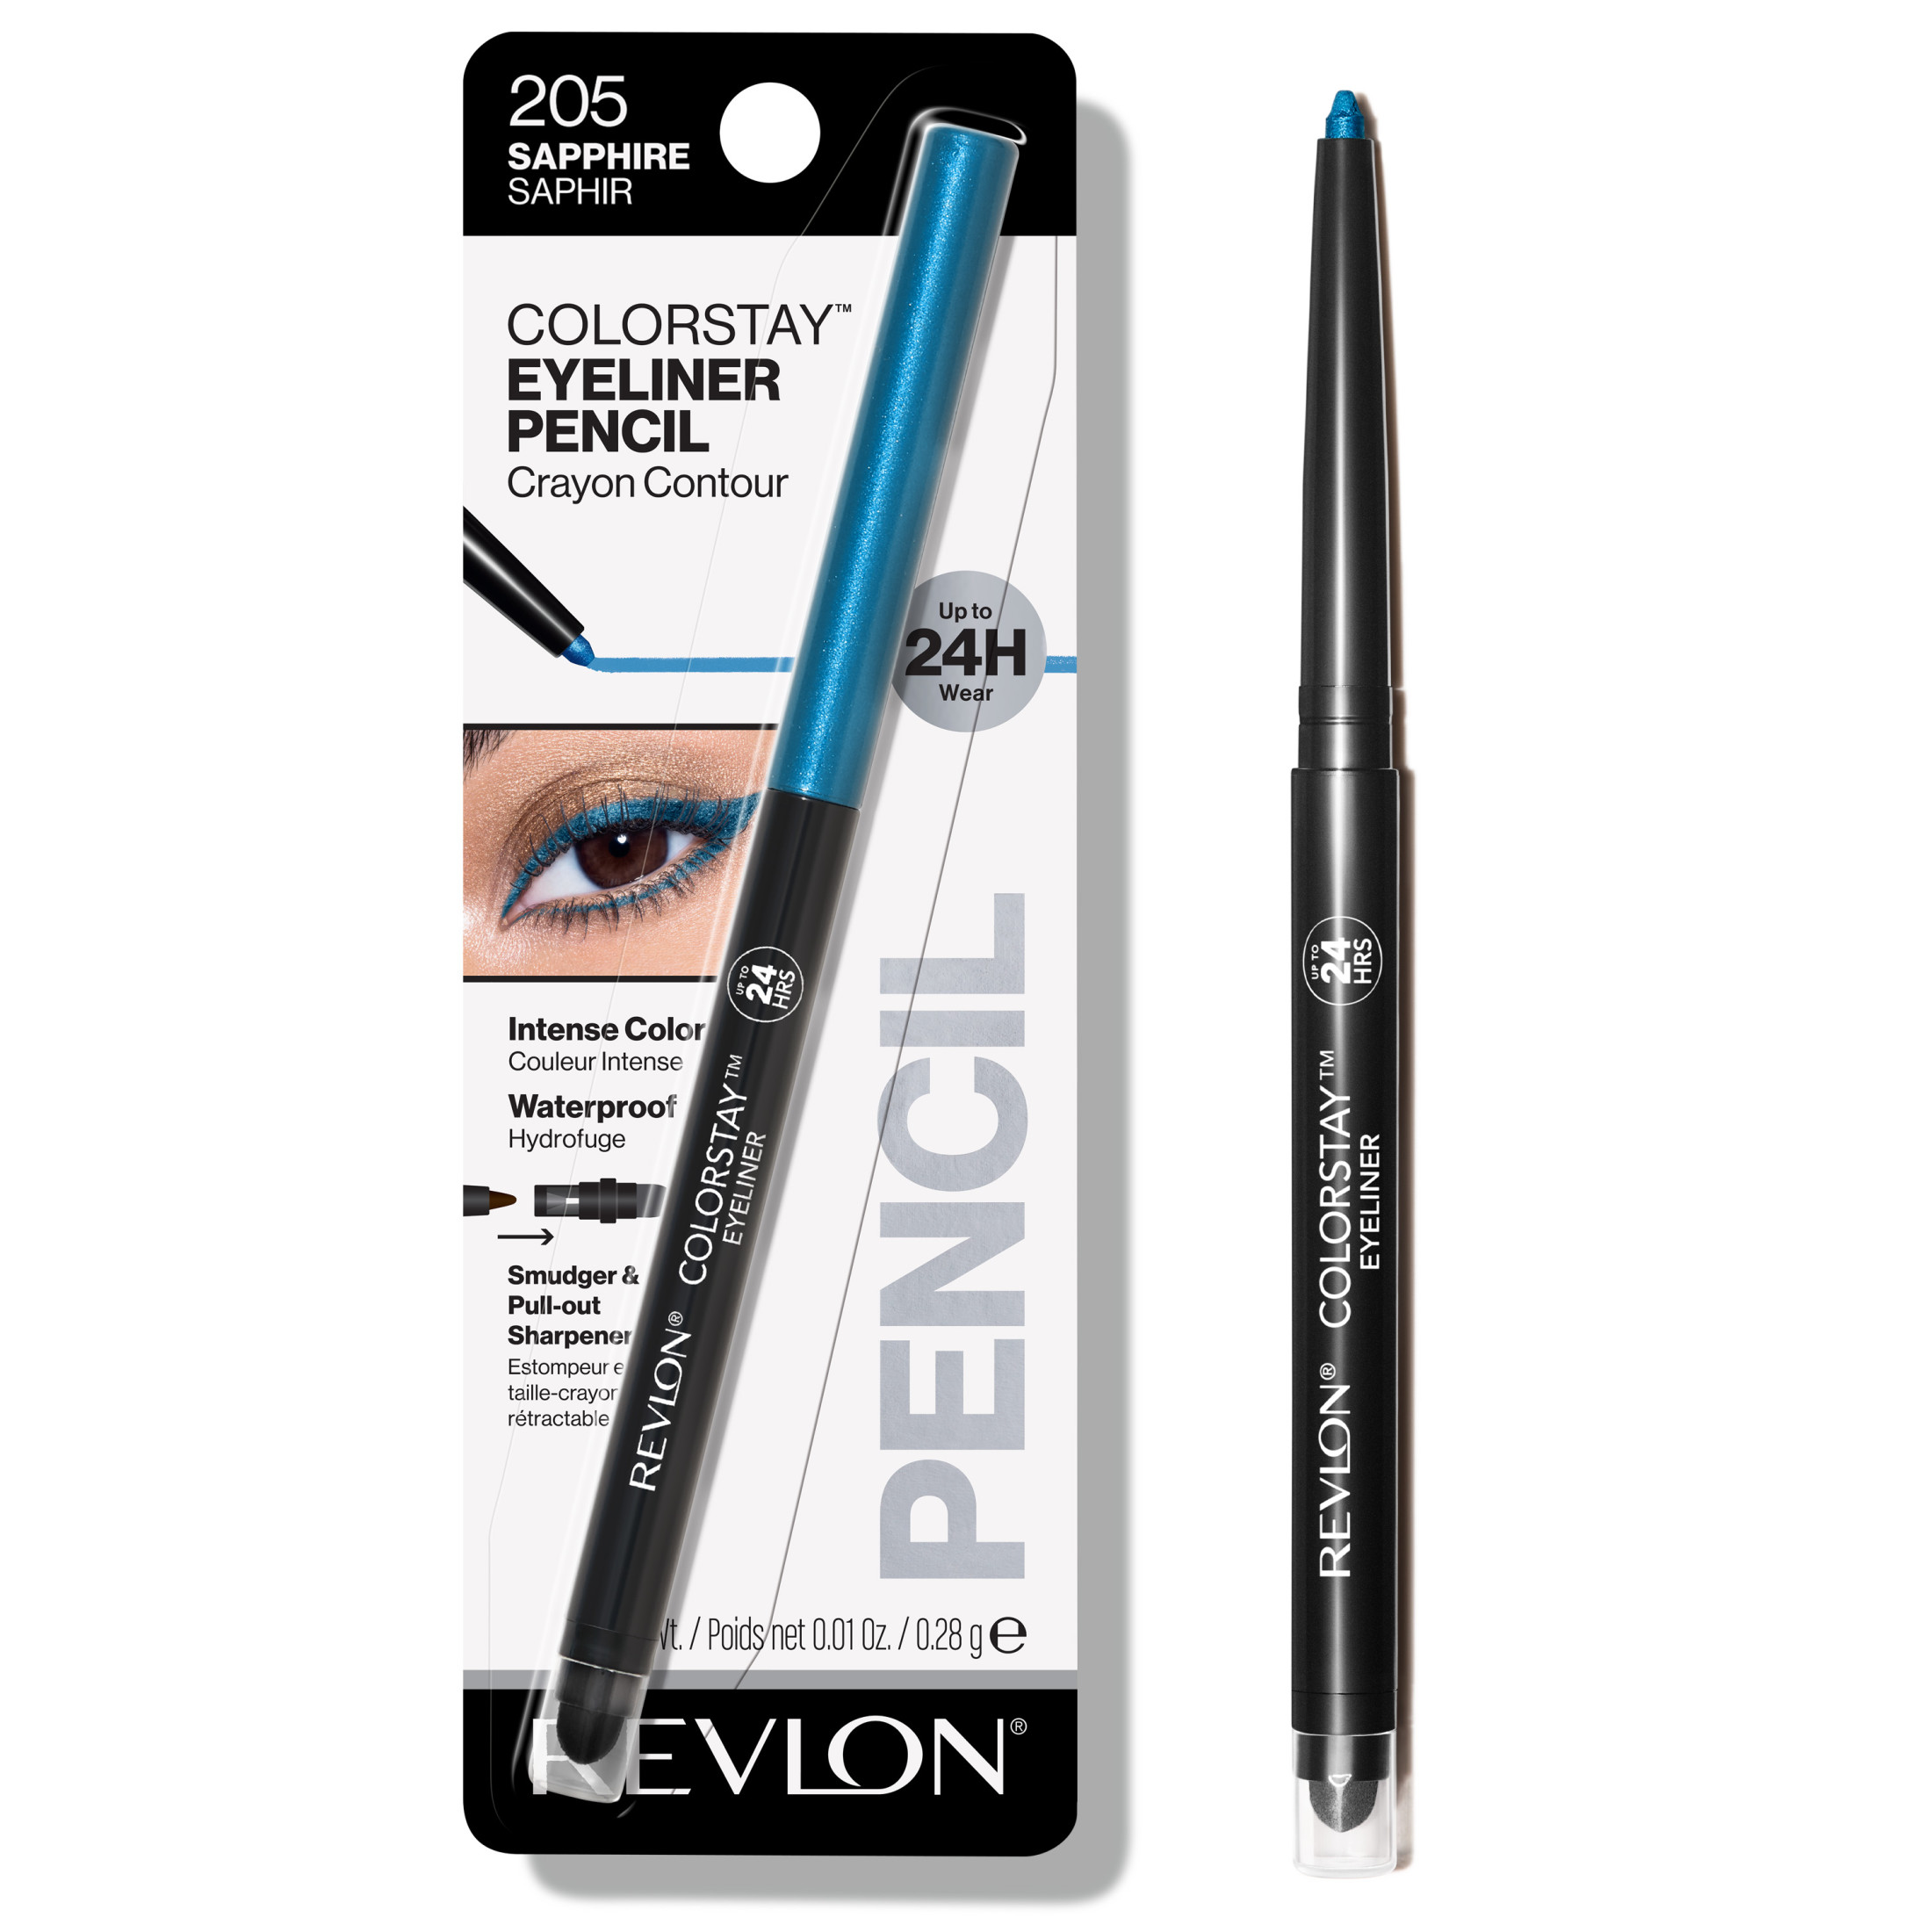 Revlon ColorStay Waterproof Eyeliner Pencil, 24HR Wear, Built-in Sharpener, 205 Sapphire, 0.01 oz - image 1 of 9